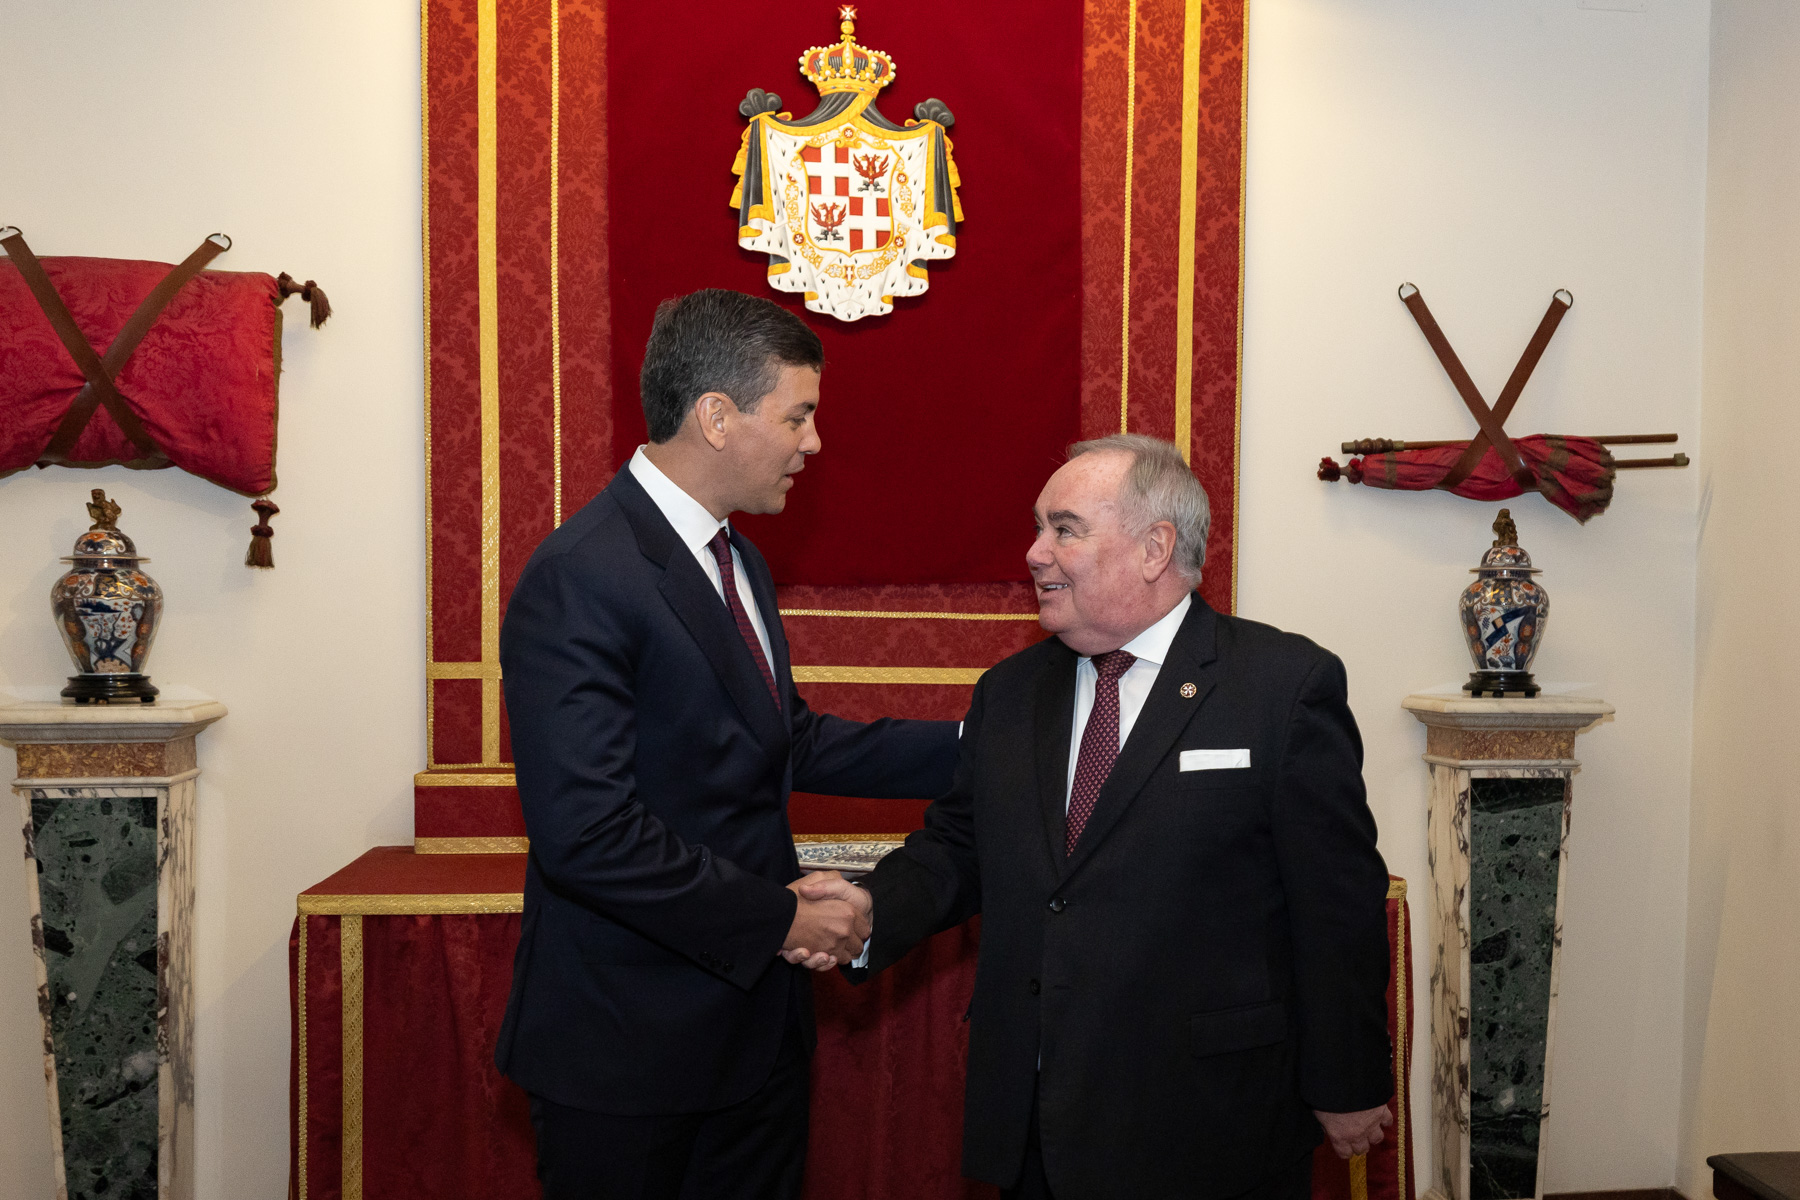 Der Großmeister des Souveränen Malteserordens empfängt den Präsidenten von Paraguay zu einem offiziellen Besuch